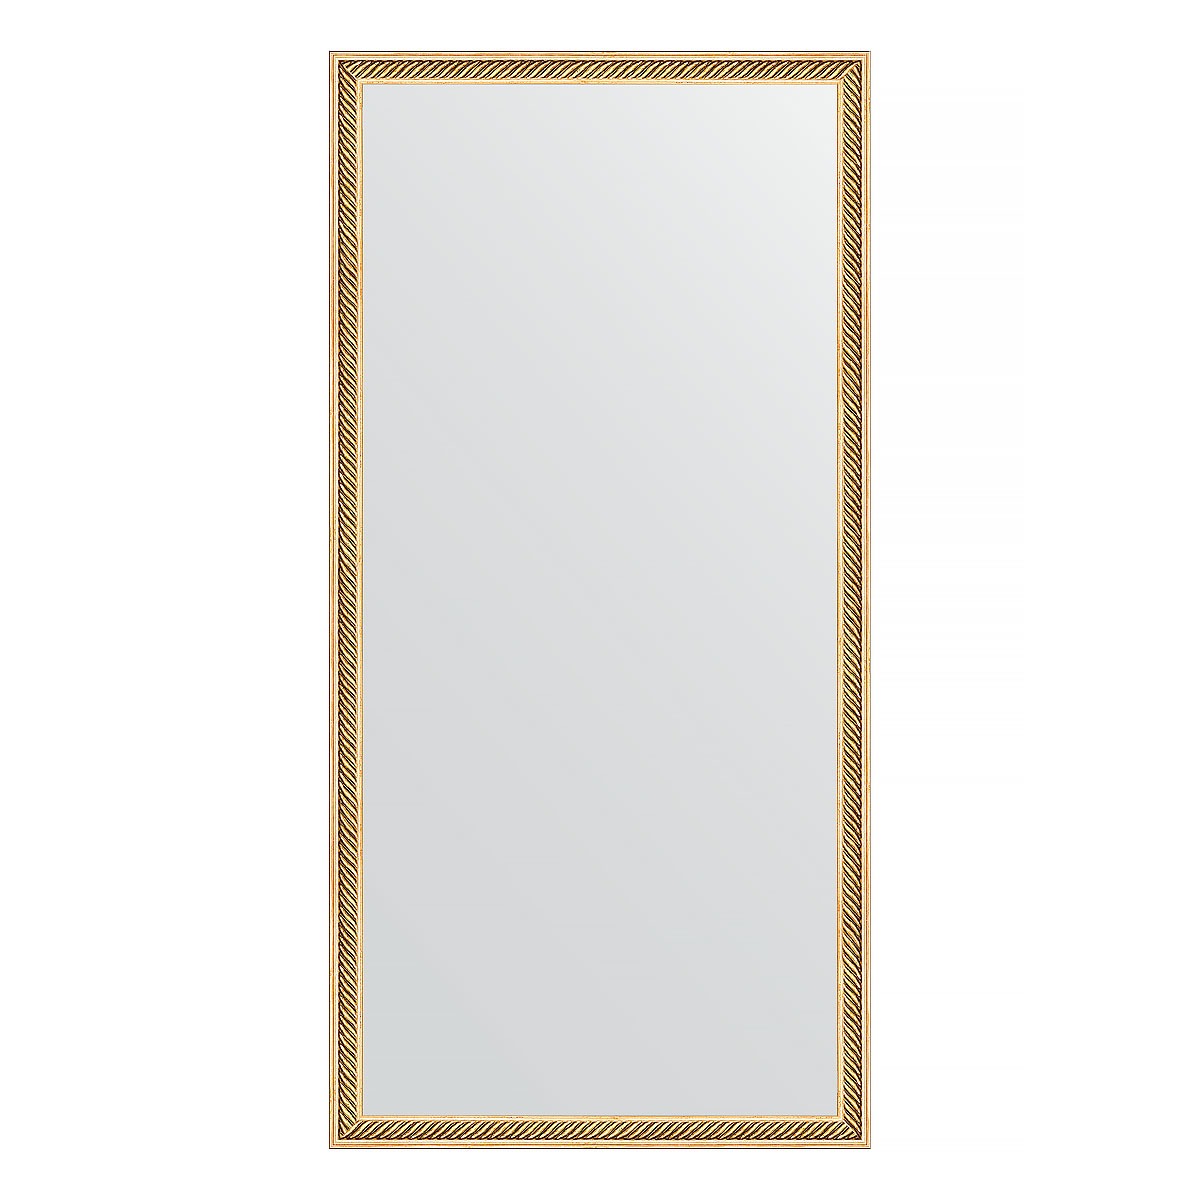 Зеркало в багетной раме Evoform витое золото 28 мм 48х98 см